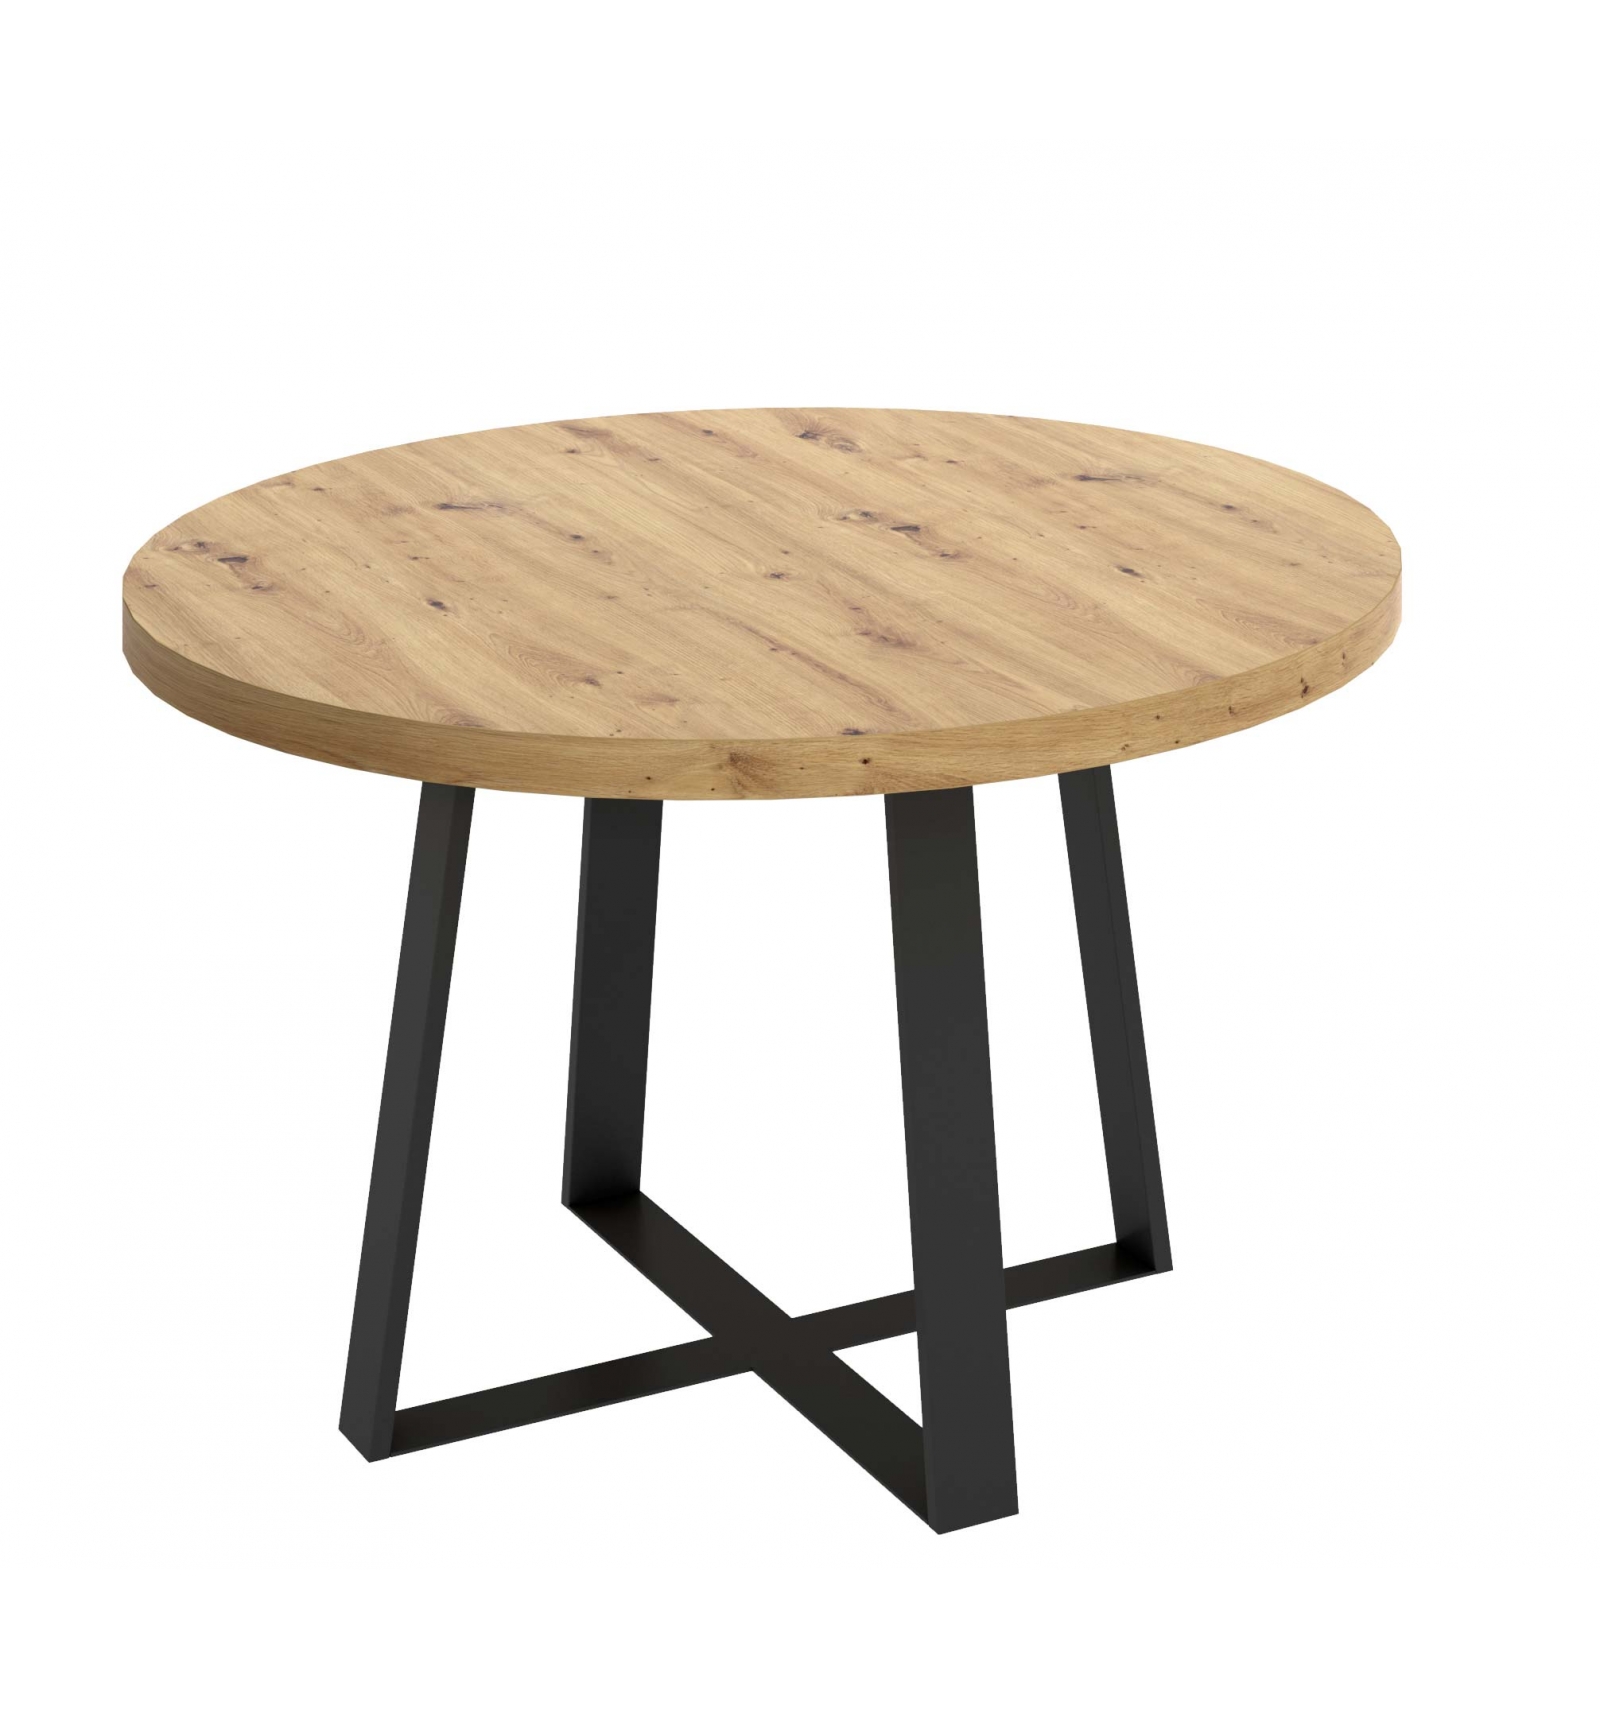 Tavolo rotondo industriale in legno con gambe metalliche